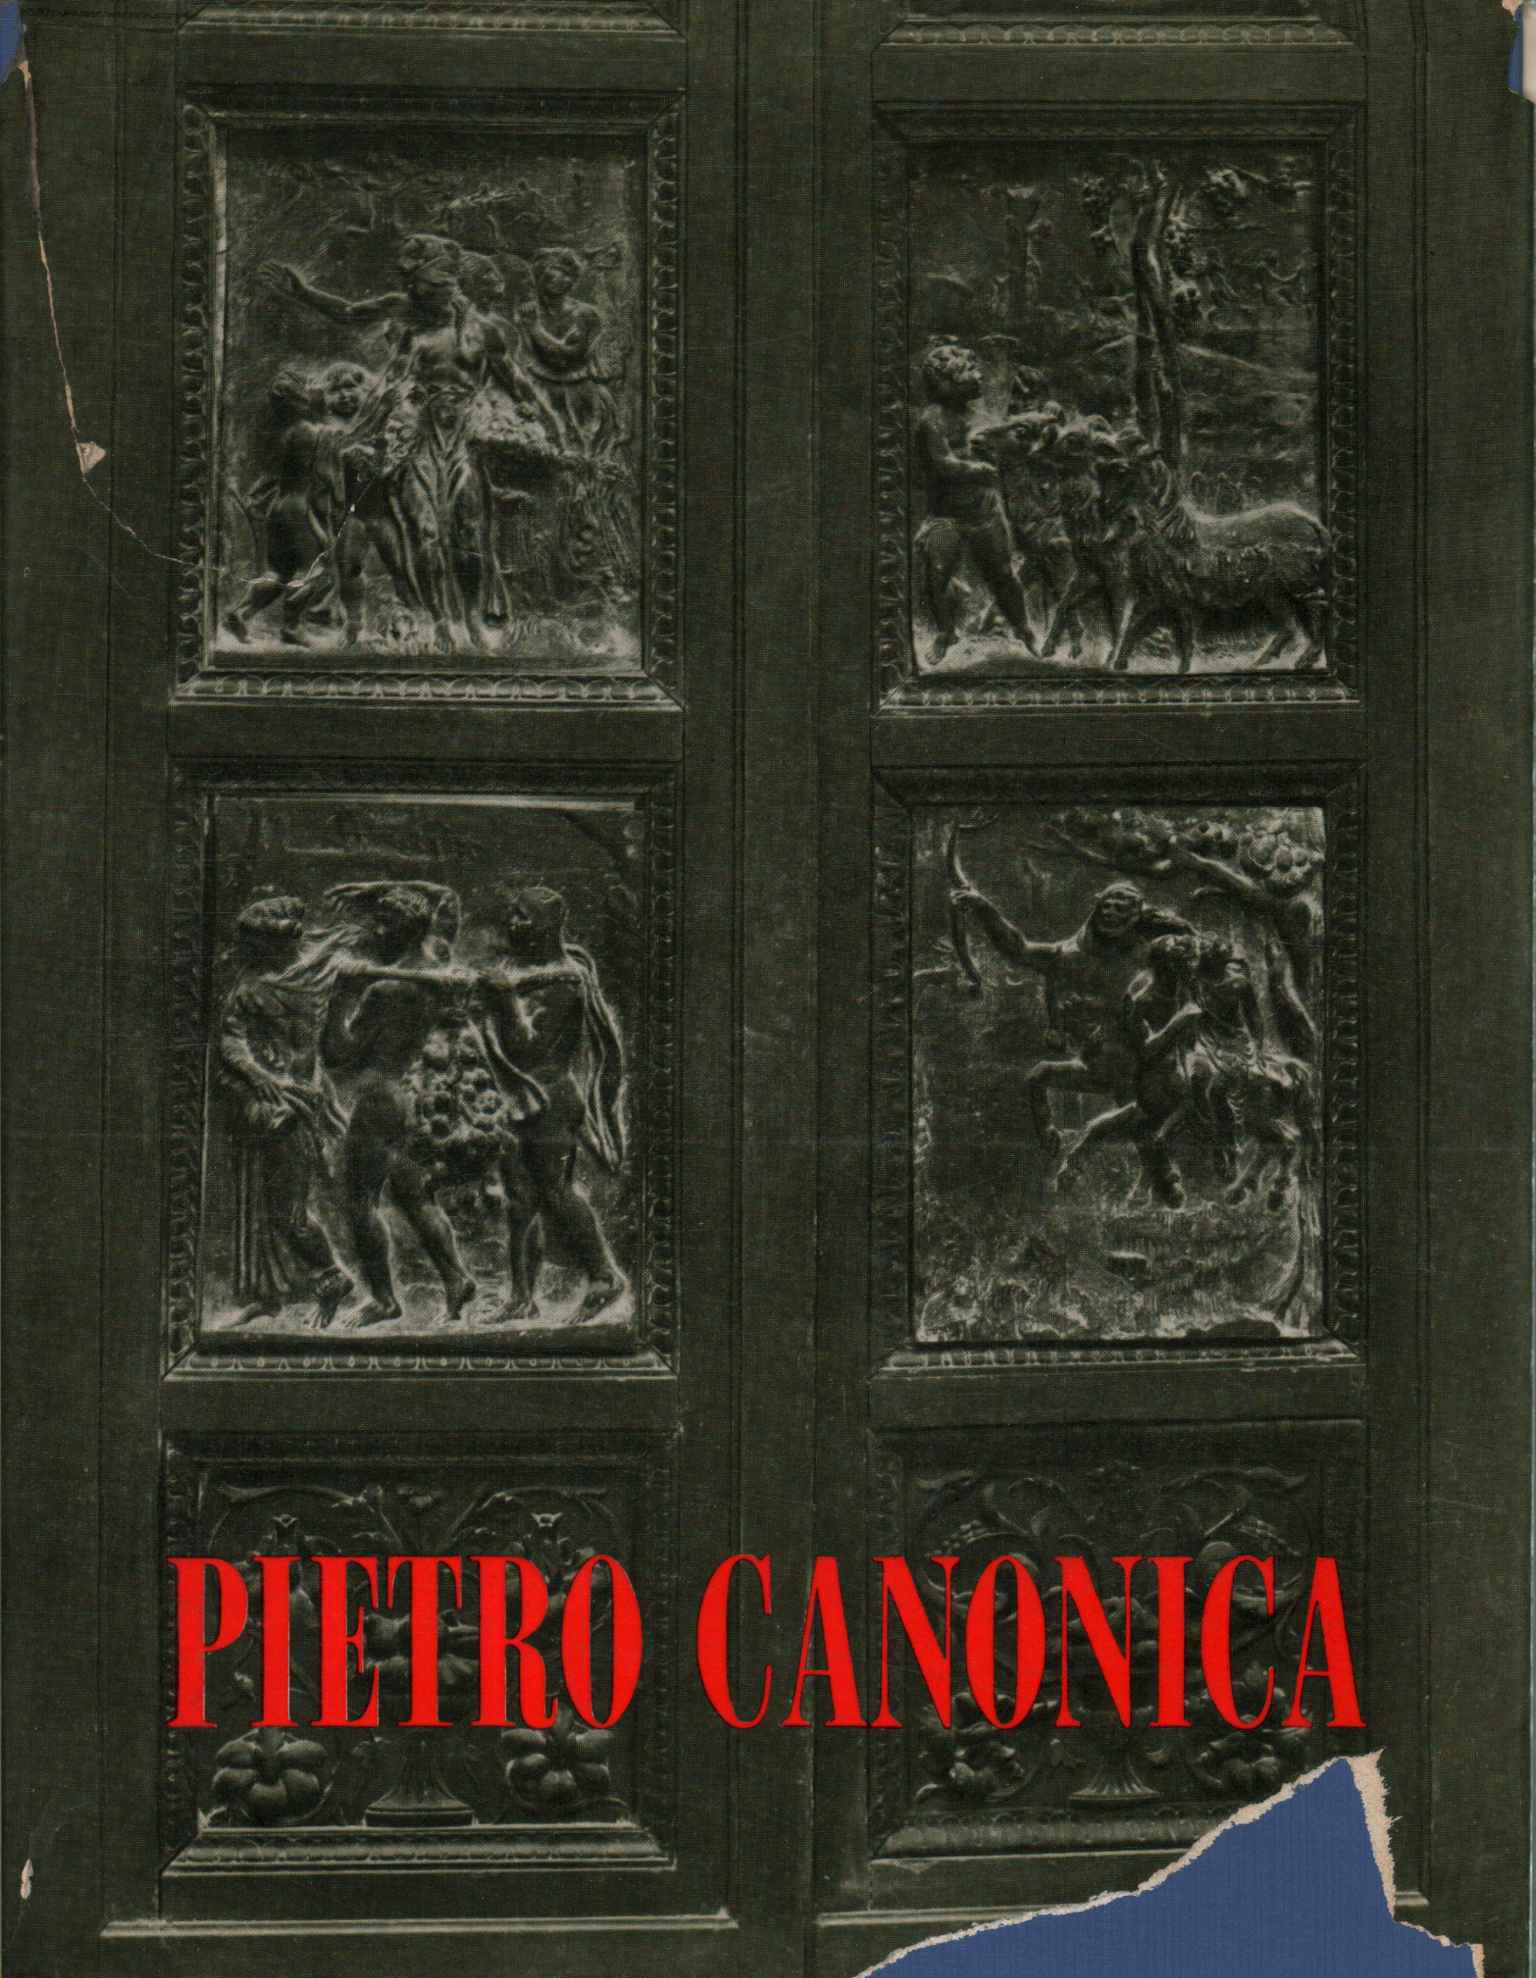 Pietro Canonica sculptor